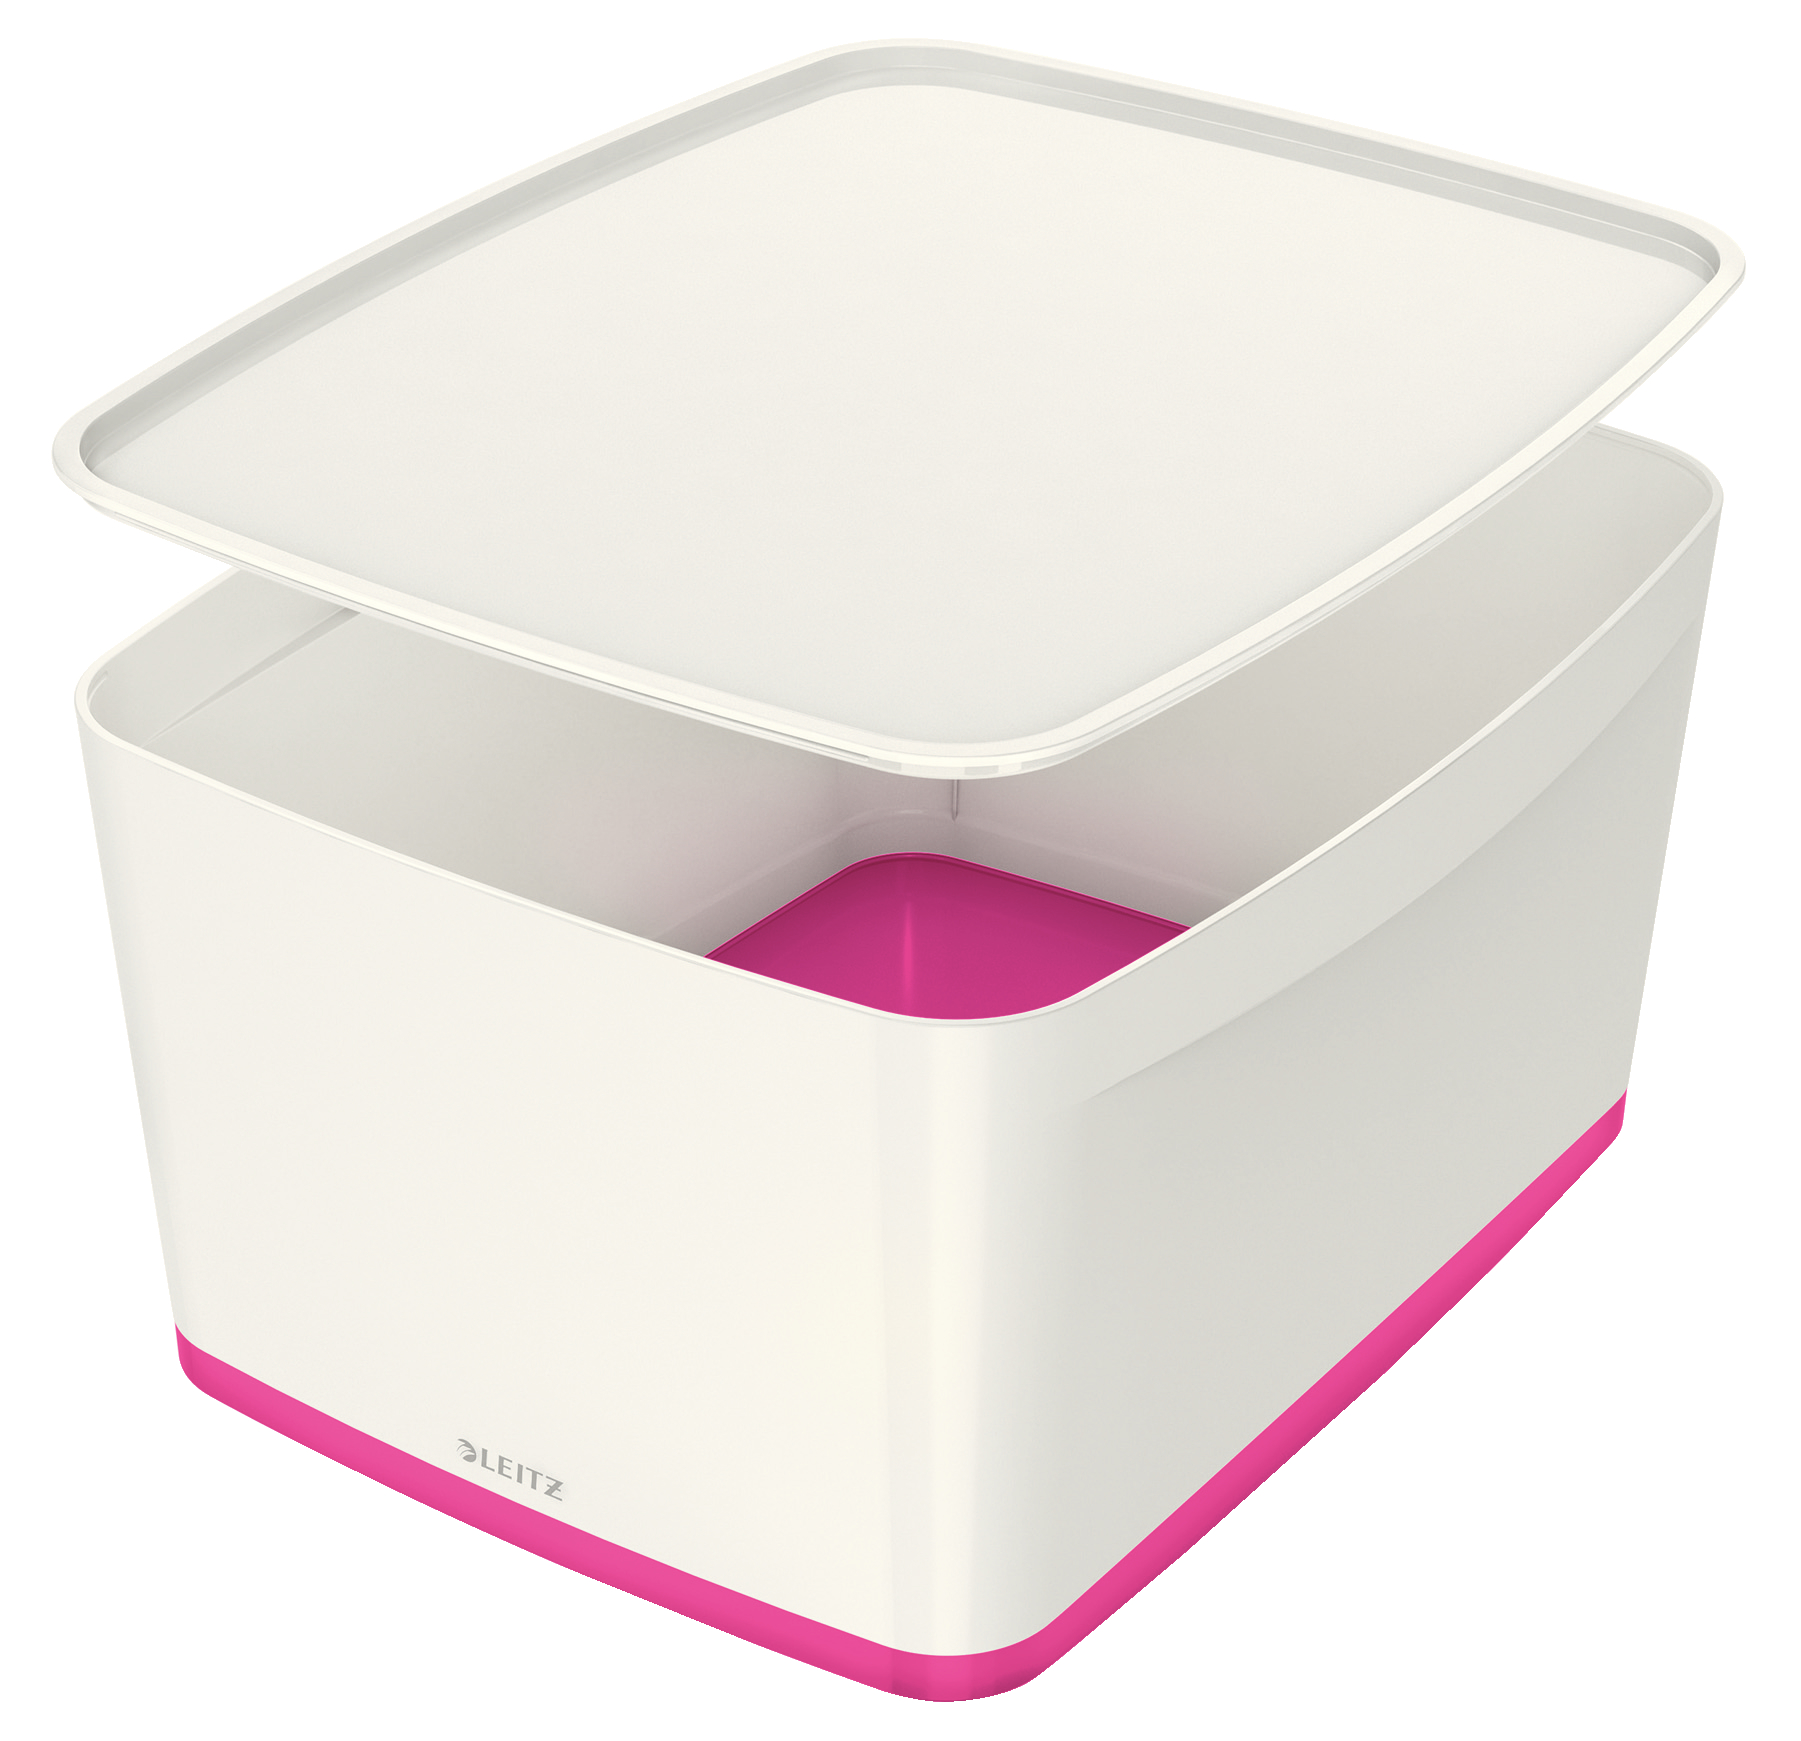 Opbevaringsboks MyBox L hvid/pink